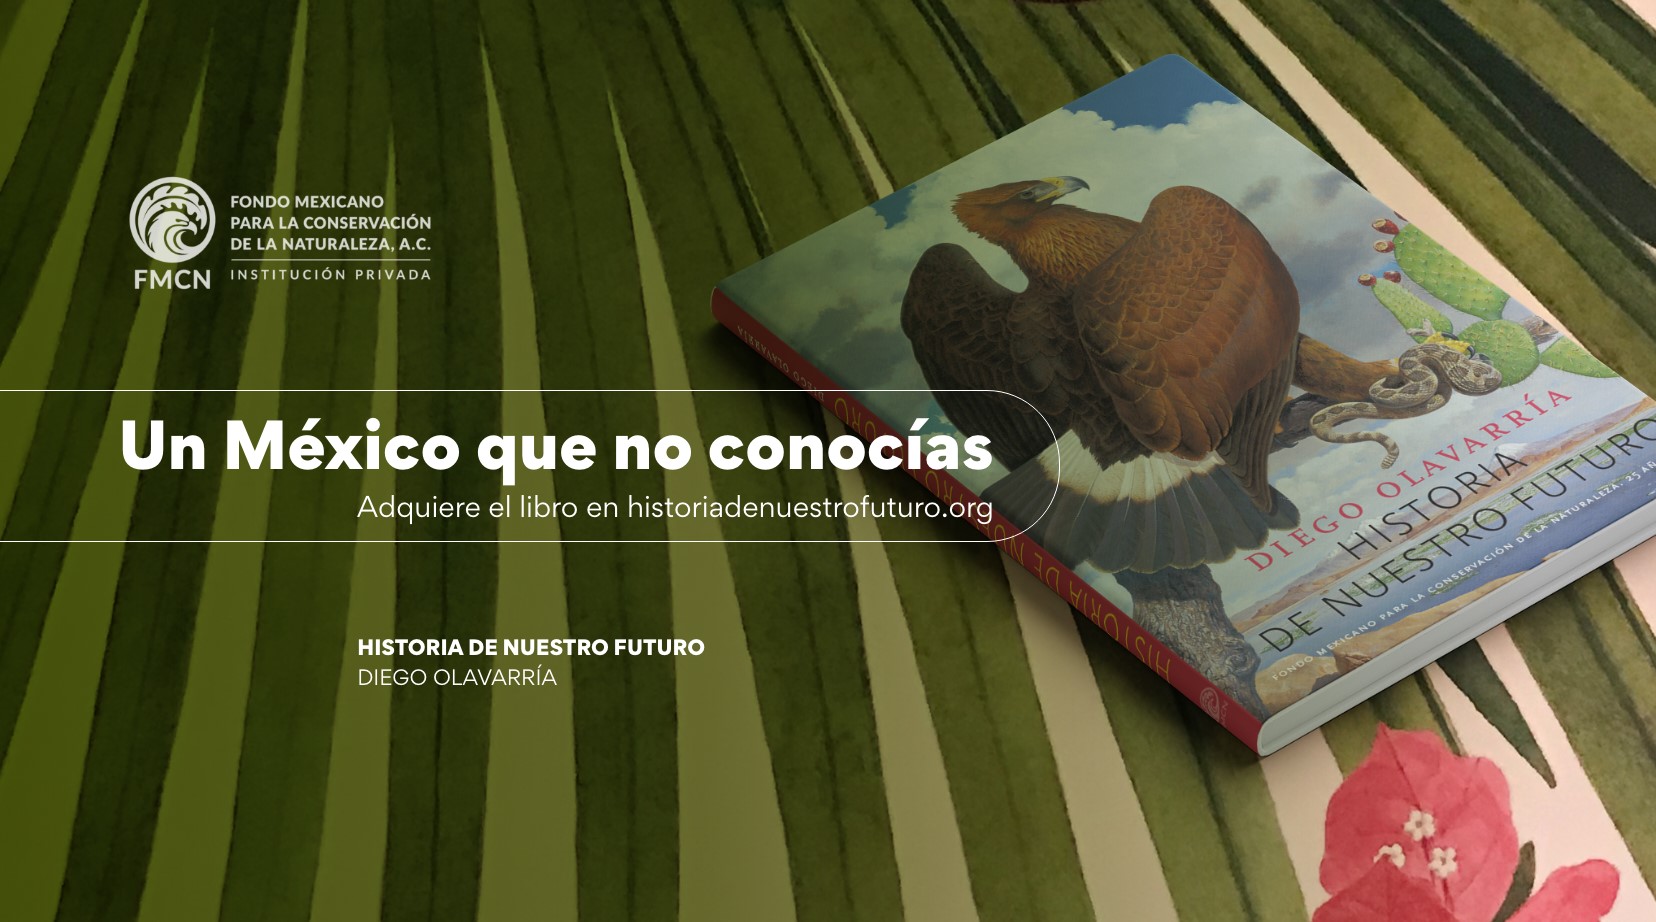 Conservar es construir futuro” y con ello, preservan el patrimonio natural de México.